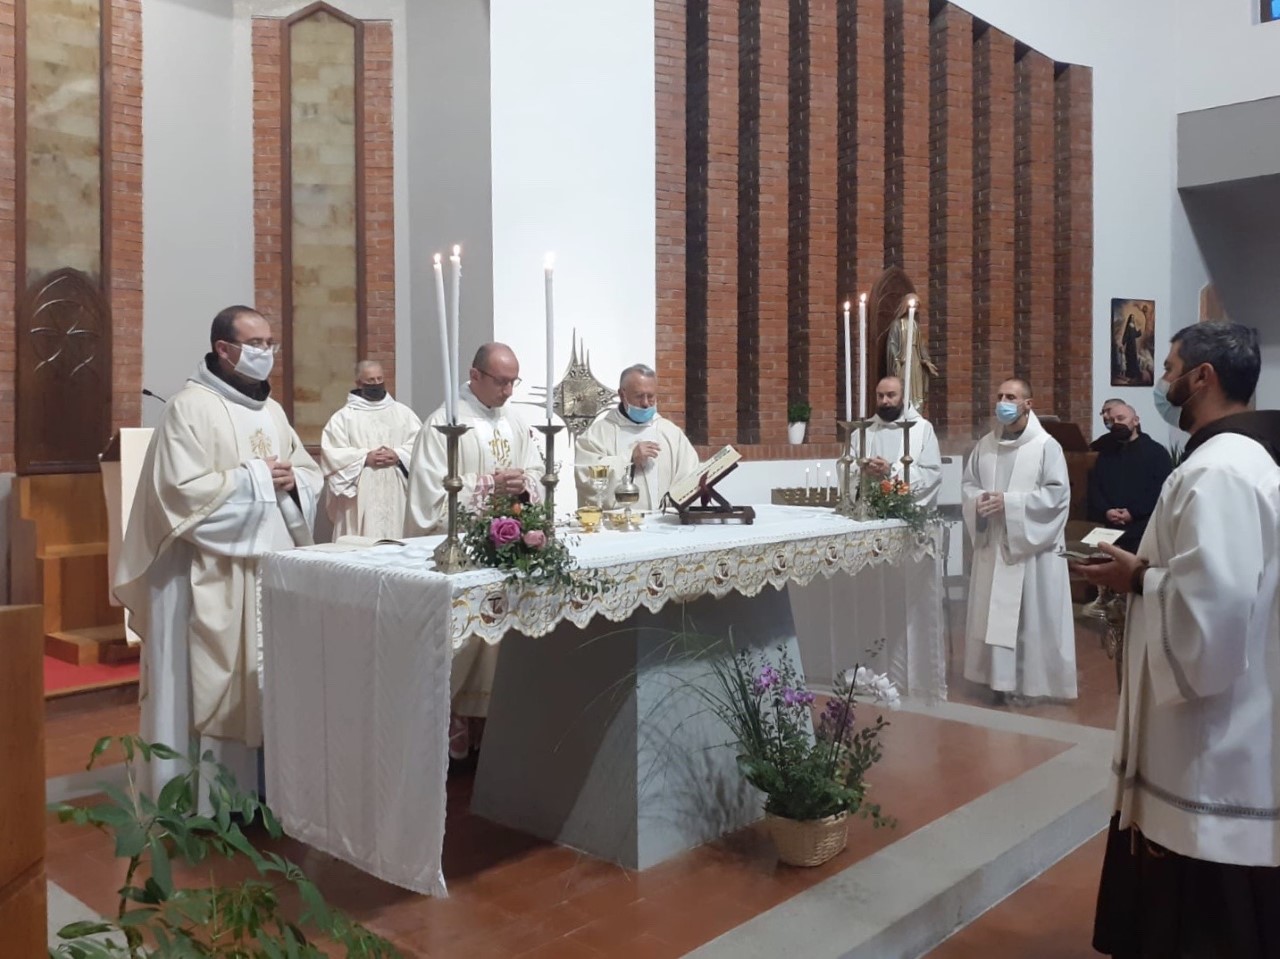 Il Sindaco Tellini ha consegnato a Frate Michele e al suo vice Francesco Maria, una pergamena di ringraziamento e ha dato il benvenuto al nuovo parroco Don Alessio